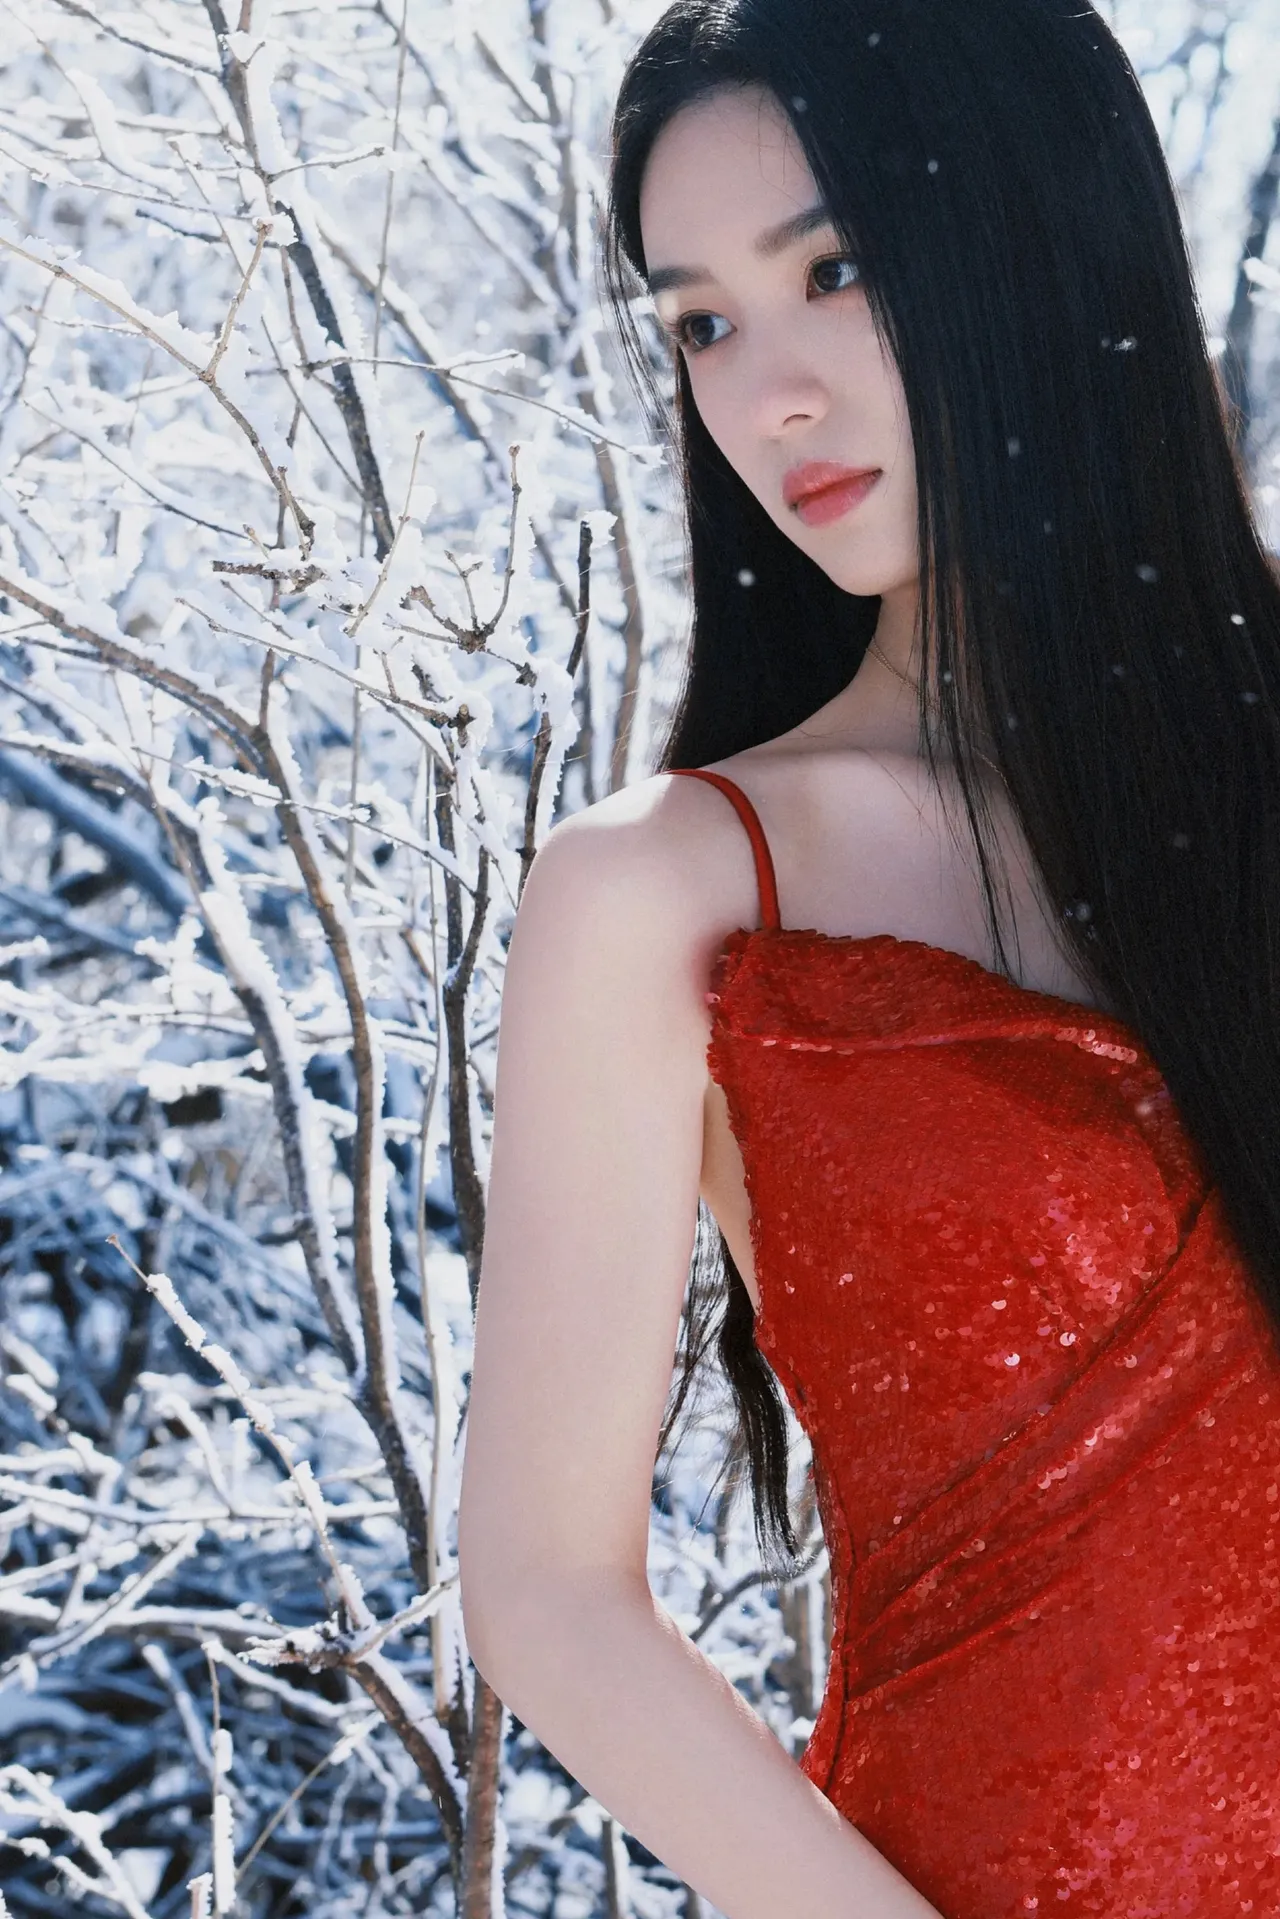 周也红色吊带裙雪地写真插图